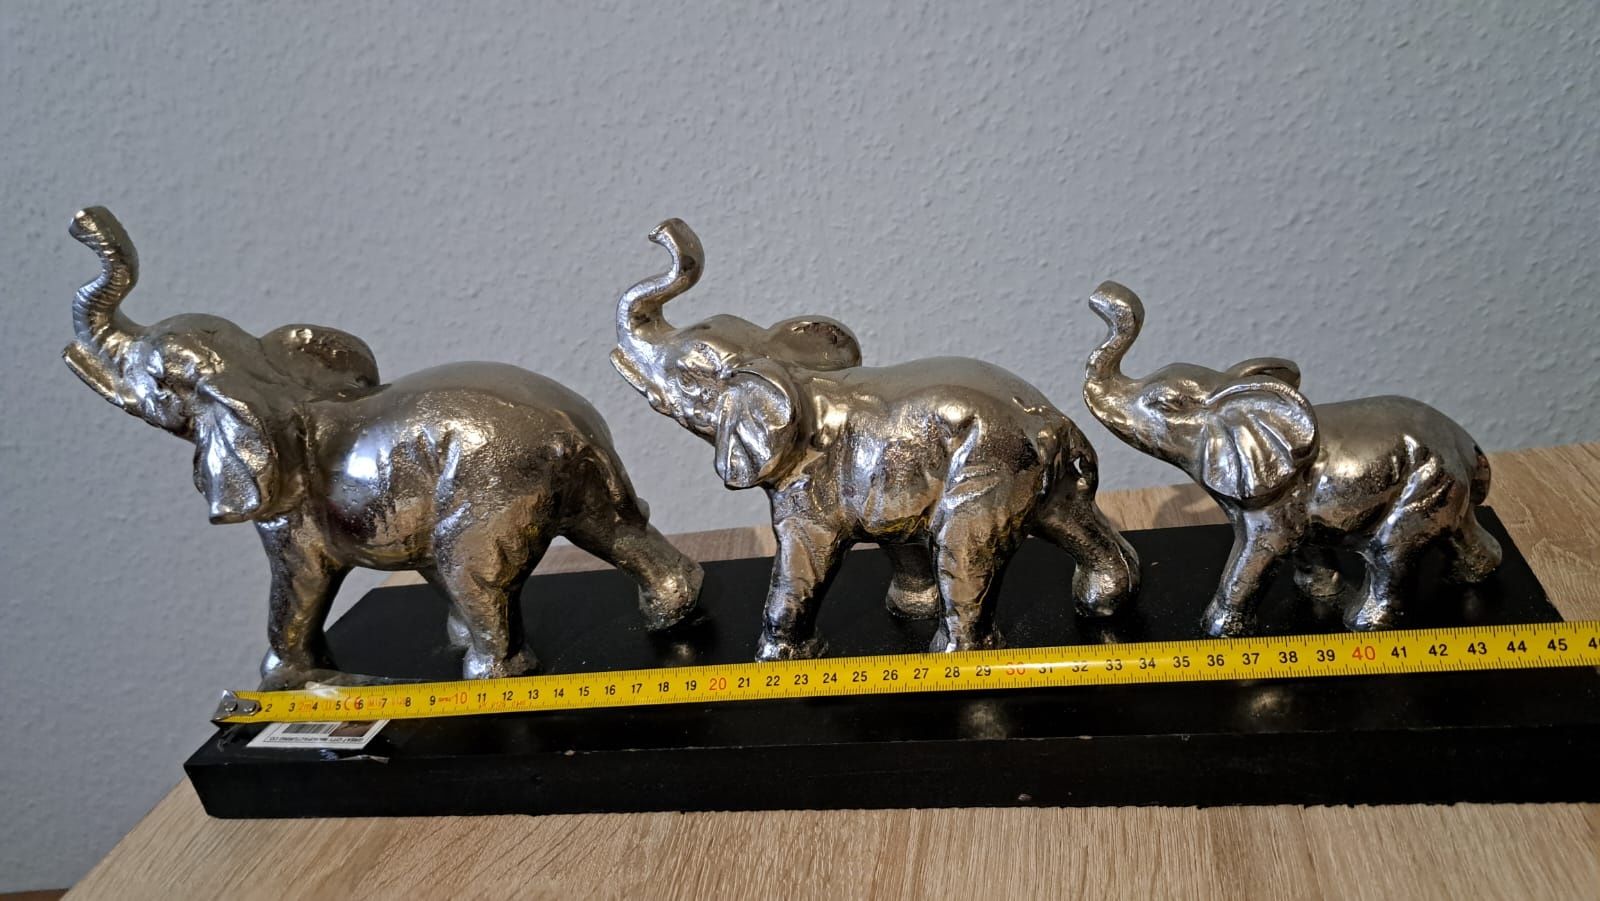 Figurka trzech słoni na podstawie